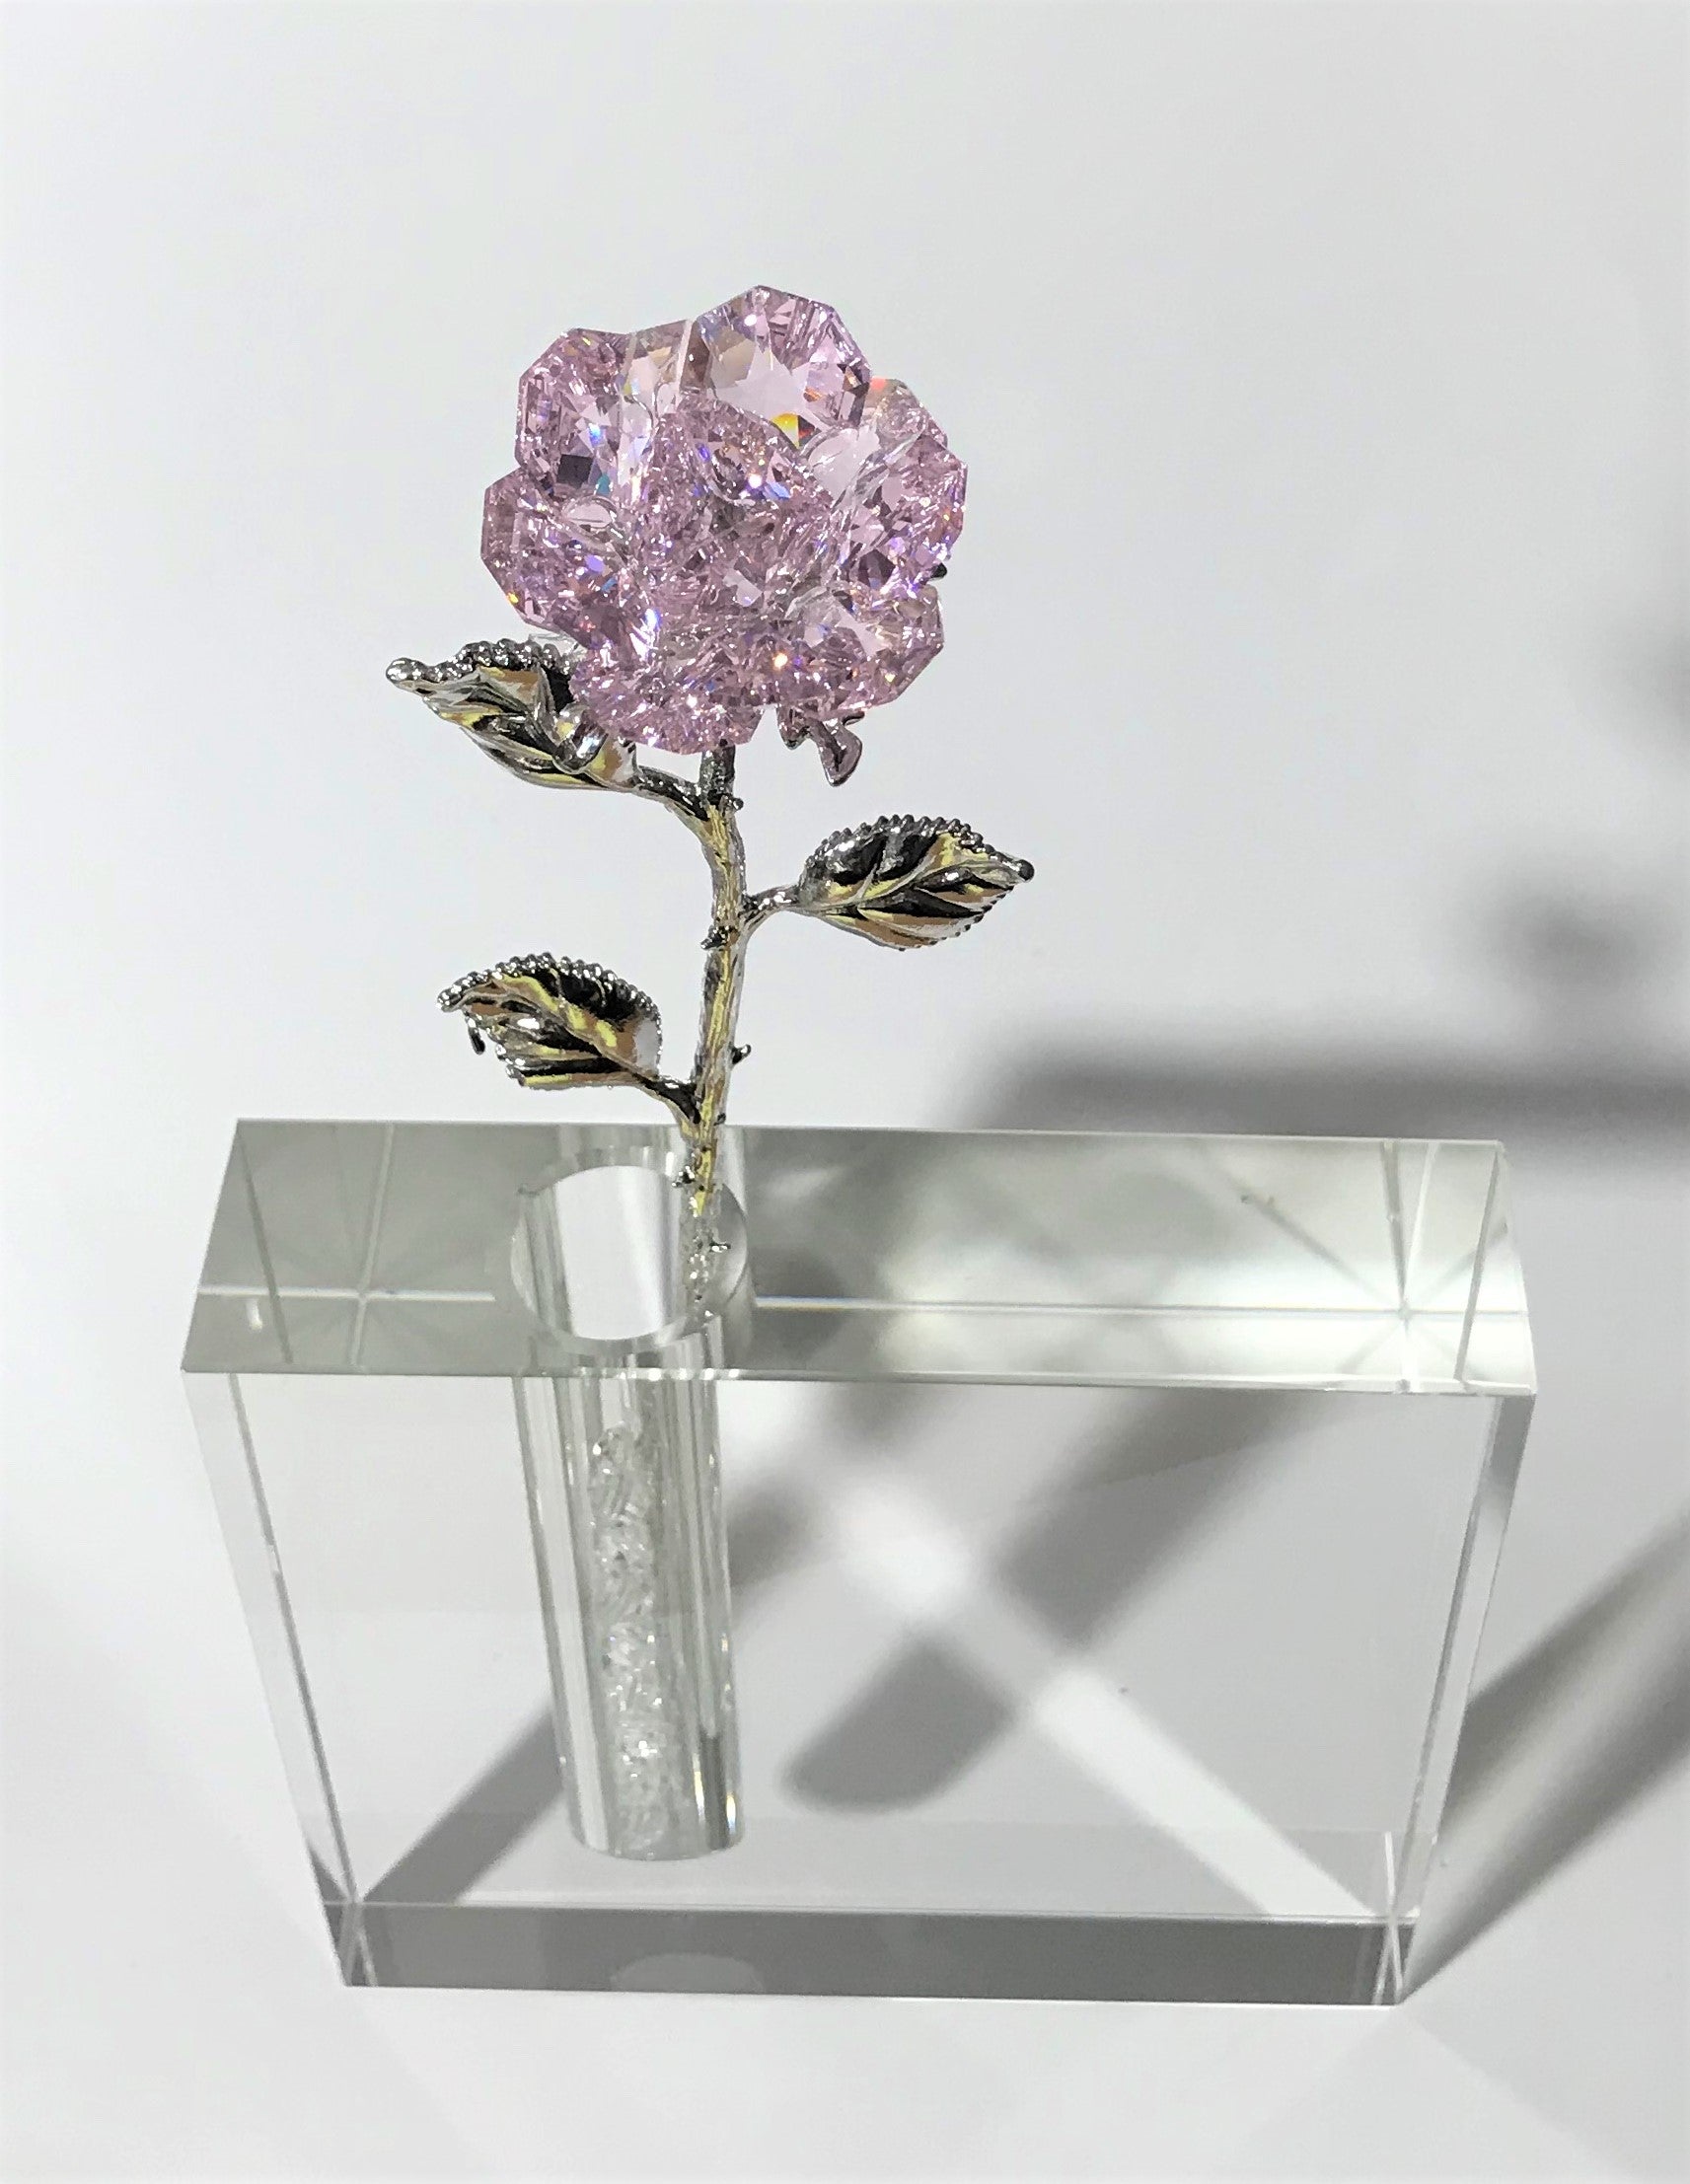 Pink Crystal Rose In 5 Inch Square Crystal Vase - Pink Crystal Flower In Vase